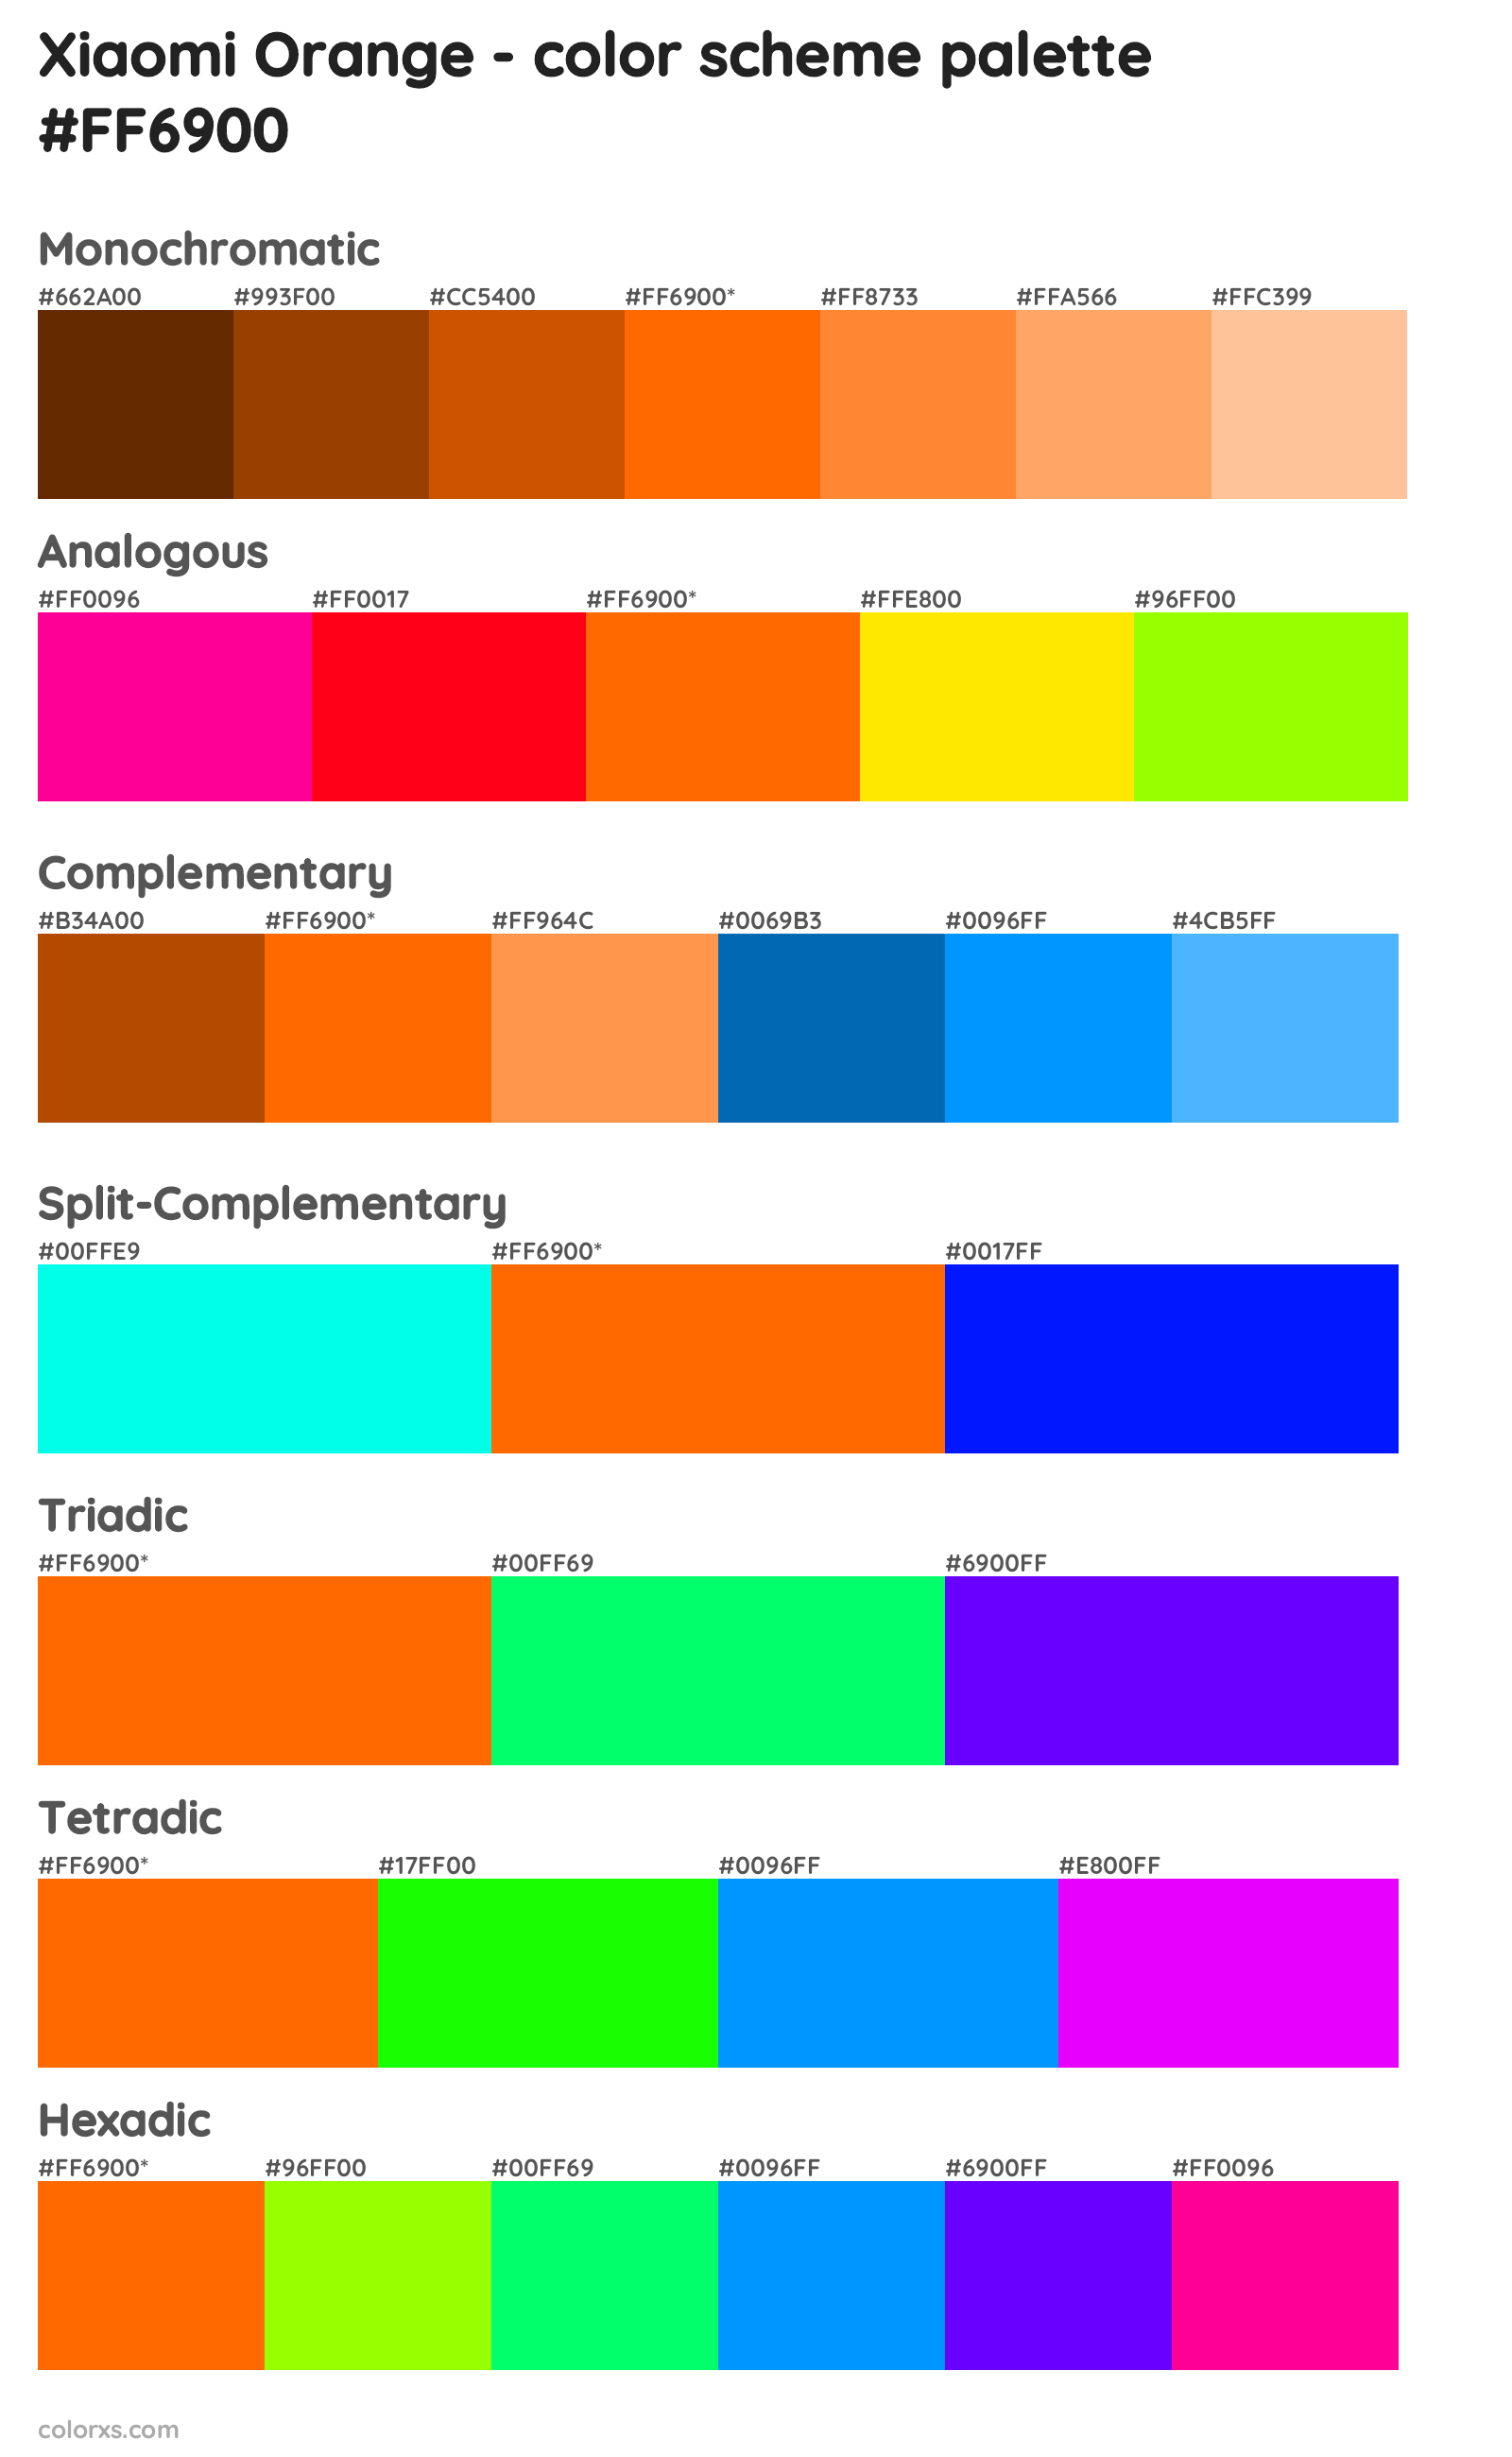 Xiaomi Orange Color Scheme Palettes